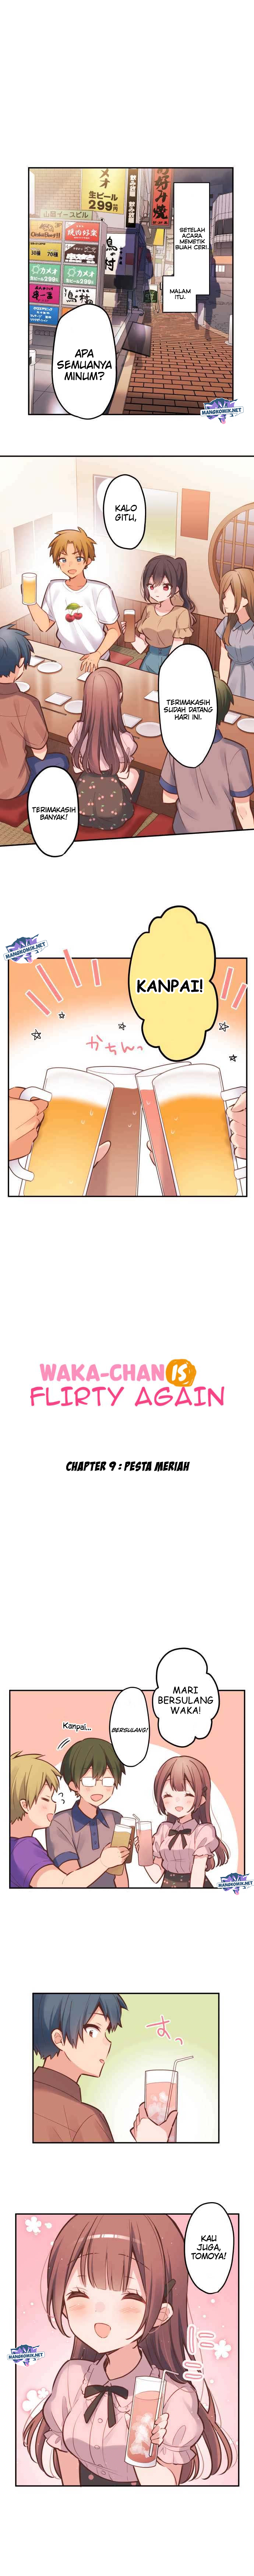 Baca Manga Waka-chan Is Flirty Again Chapter 9 Gambar 2